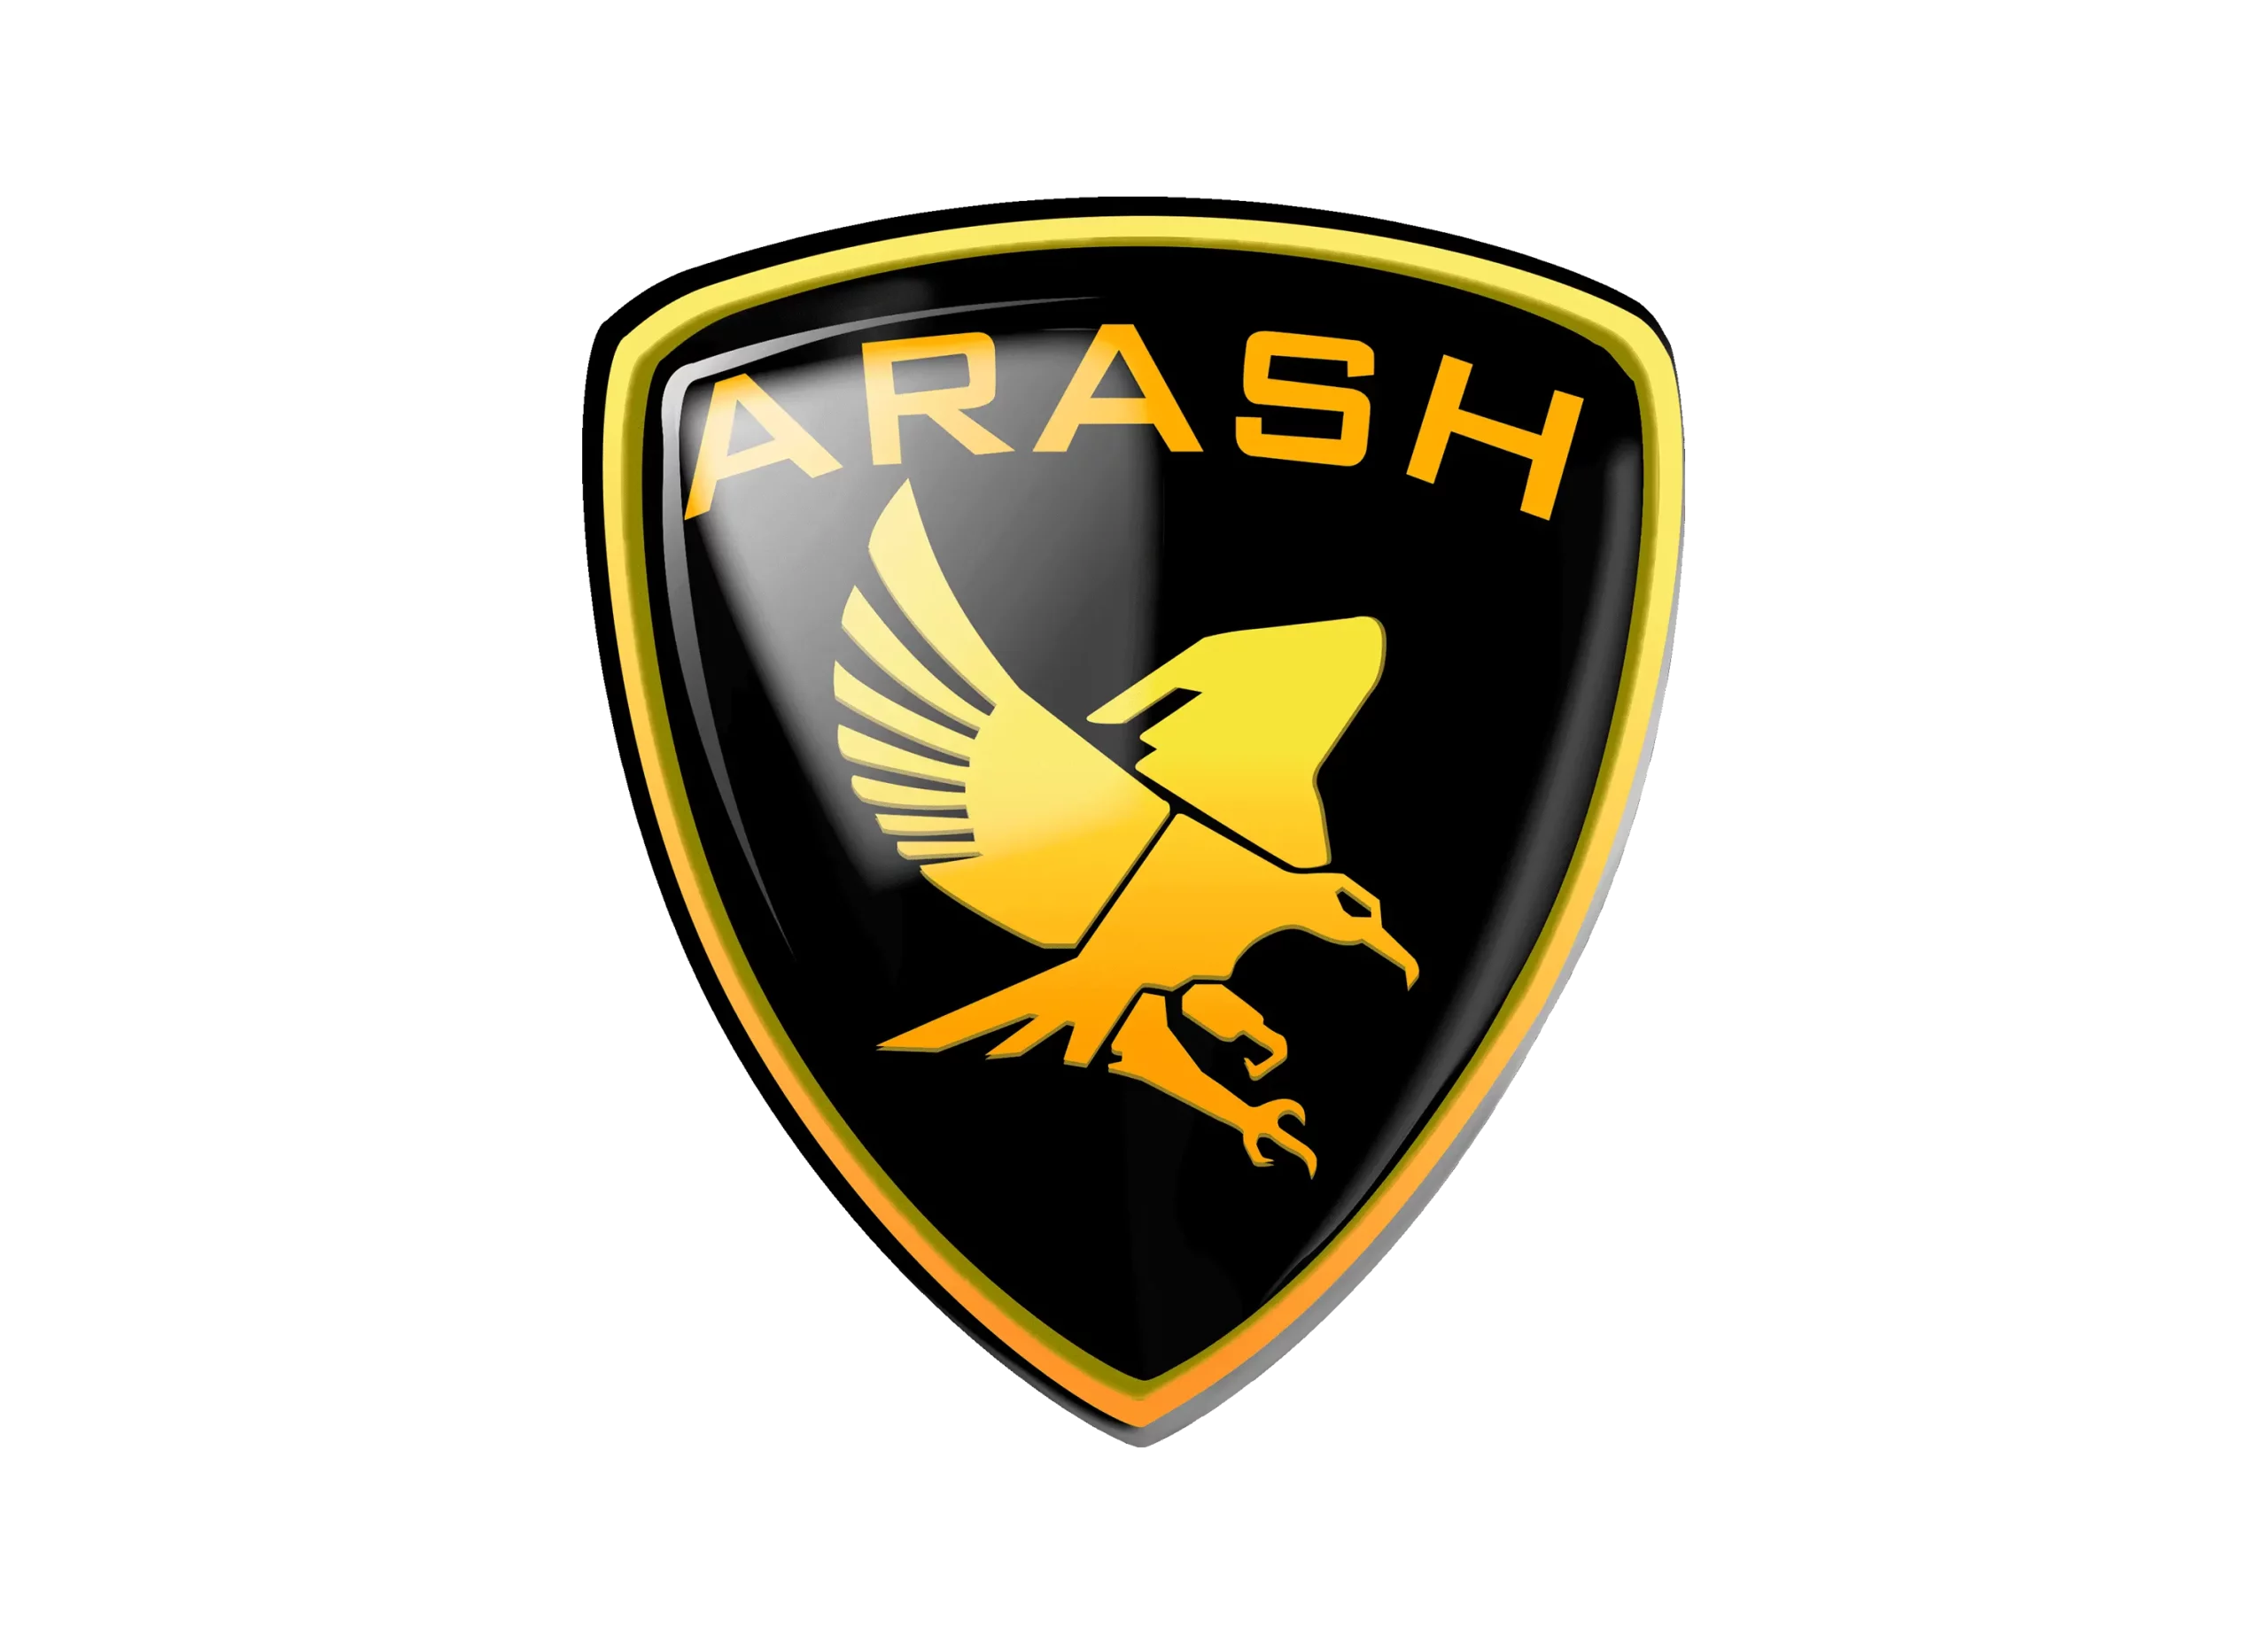 Arash logo 1999-2006